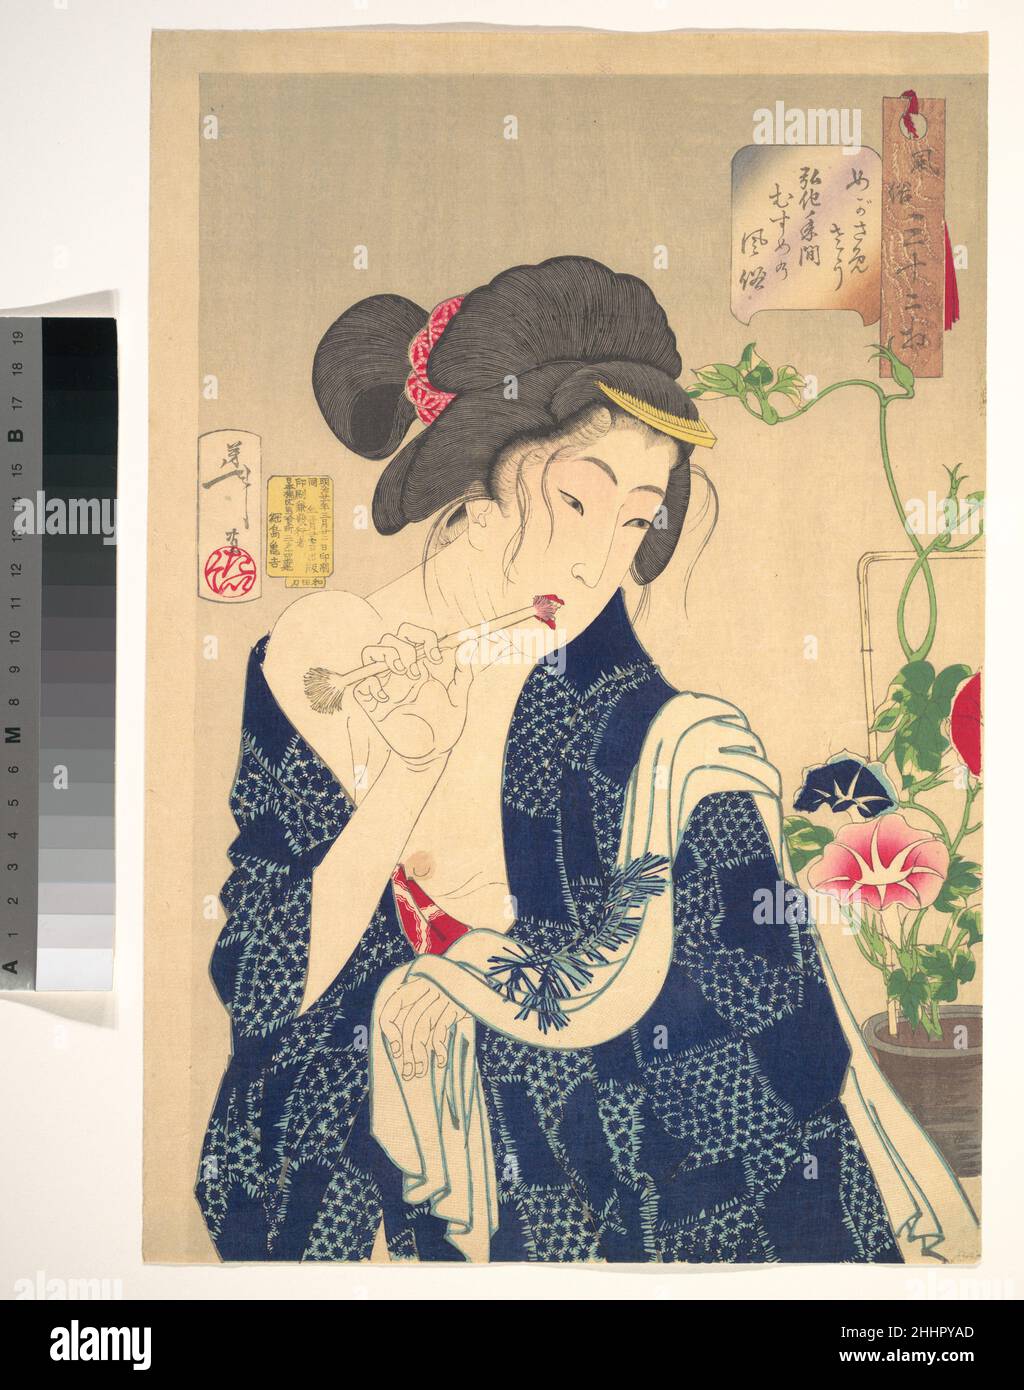 Waking Up: A Girl of the Kōka Era (1844–1848) 1888 Tsukioka Yoshitoshi Japanisch die Serie, die Yoshitoshi zu einem bekannten Künstler machte, war eine der wichtigsten Meiji-Serien von Ukiyo-e-Drucken von Schönheiten. Die Dame putzt ihre Zähne mit einer gespaltenen Bambuszahnbürste. Ihre Schlafrobe aus Baumwolle rutscht einer Schulter ab, und einige Haarsträhnen haben sich gelöst, was darauf hindeutet, dass sie nur halb wach ist. Die großen, morgendlichen Blumen, die als Asagao (wörtlich: 'Morning Faces') im Topf hinter ihr auf der rechten Seite bekannt sind, werden geschickt mit dem Porträt in Verbindung gebracht.die hervorragende Technik dieses Drucks ist Stockfoto